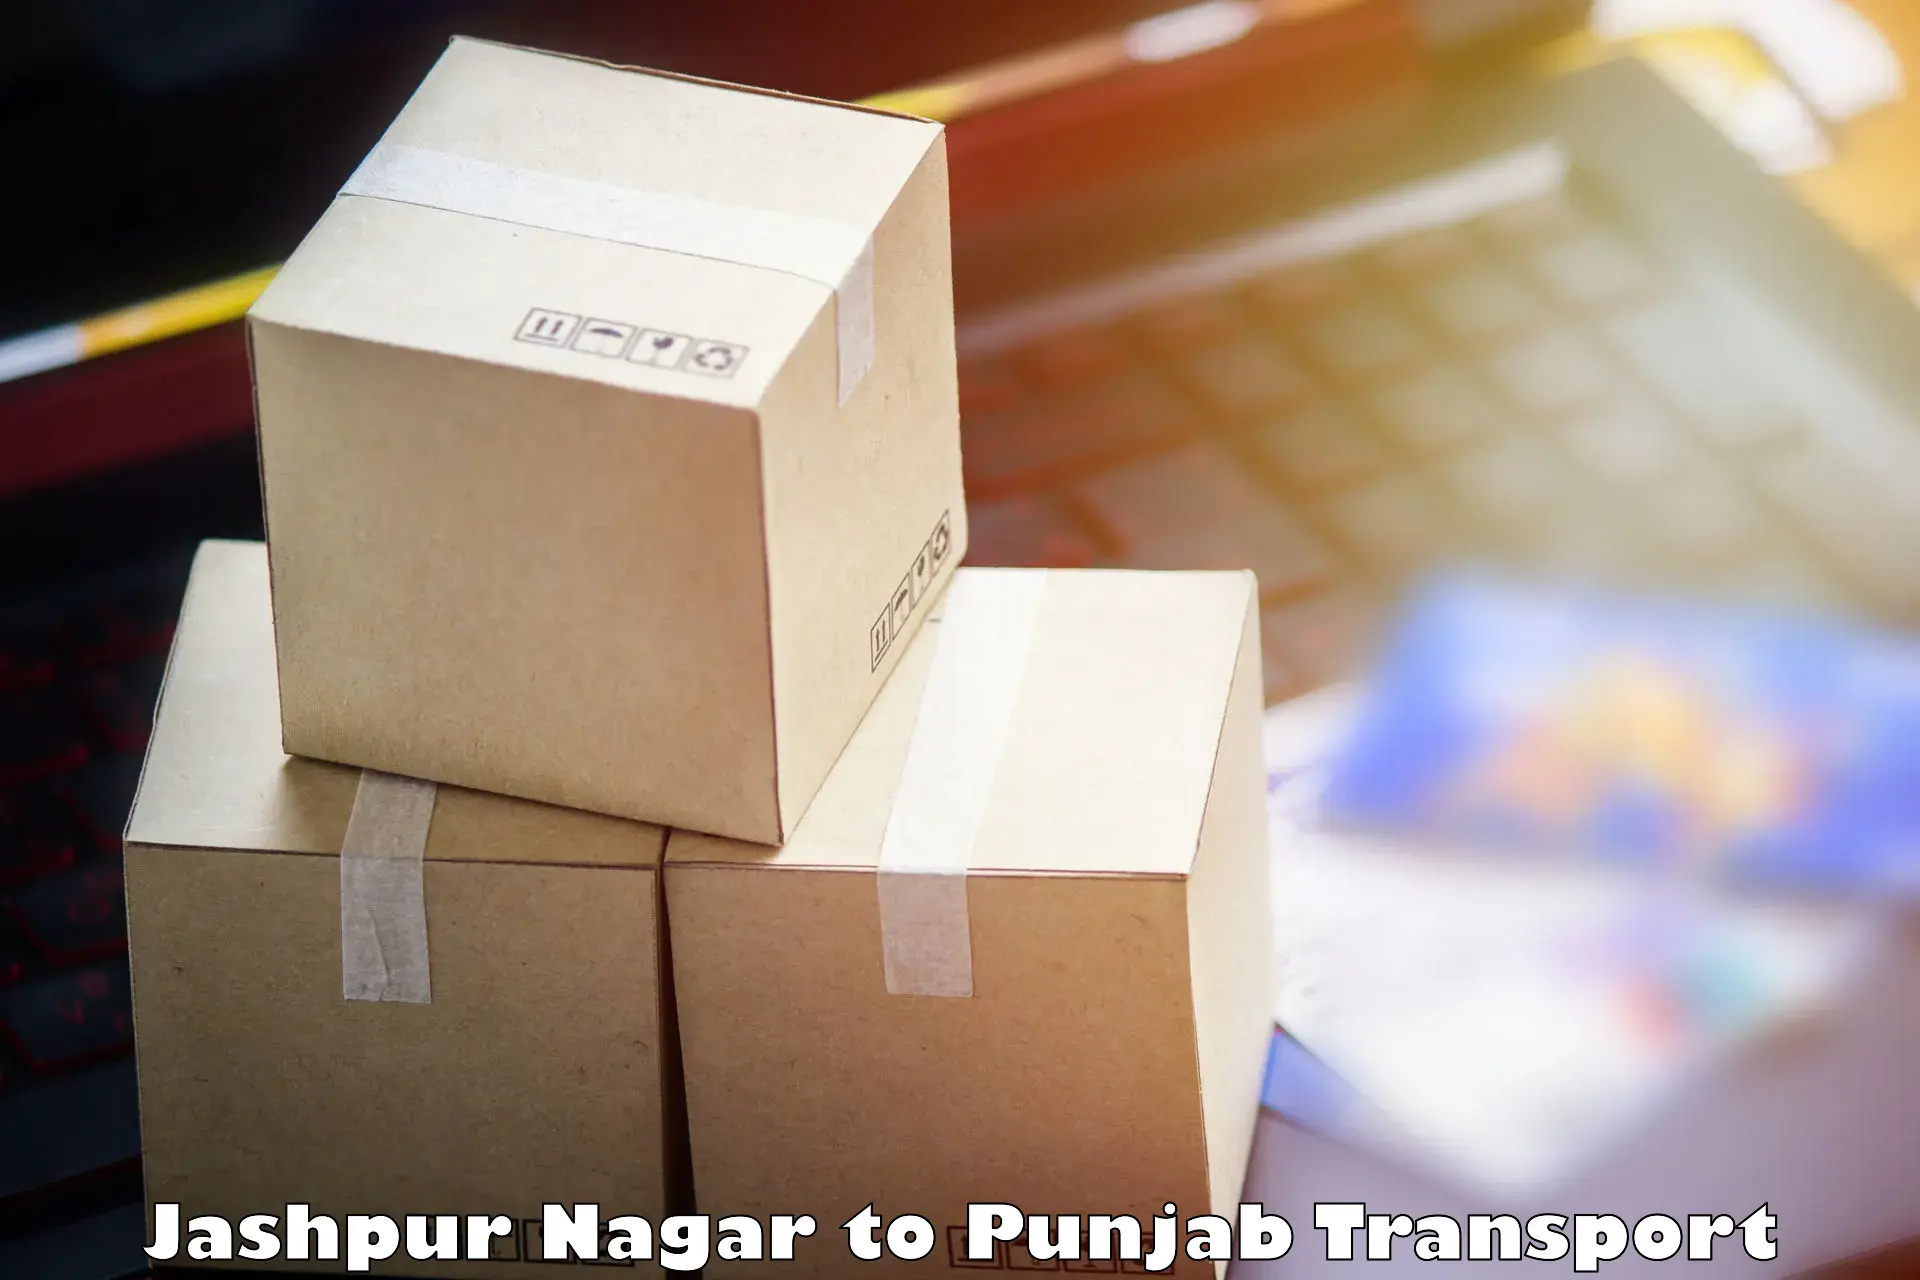 Daily parcel service transport Jashpur Nagar to Bagha Purana